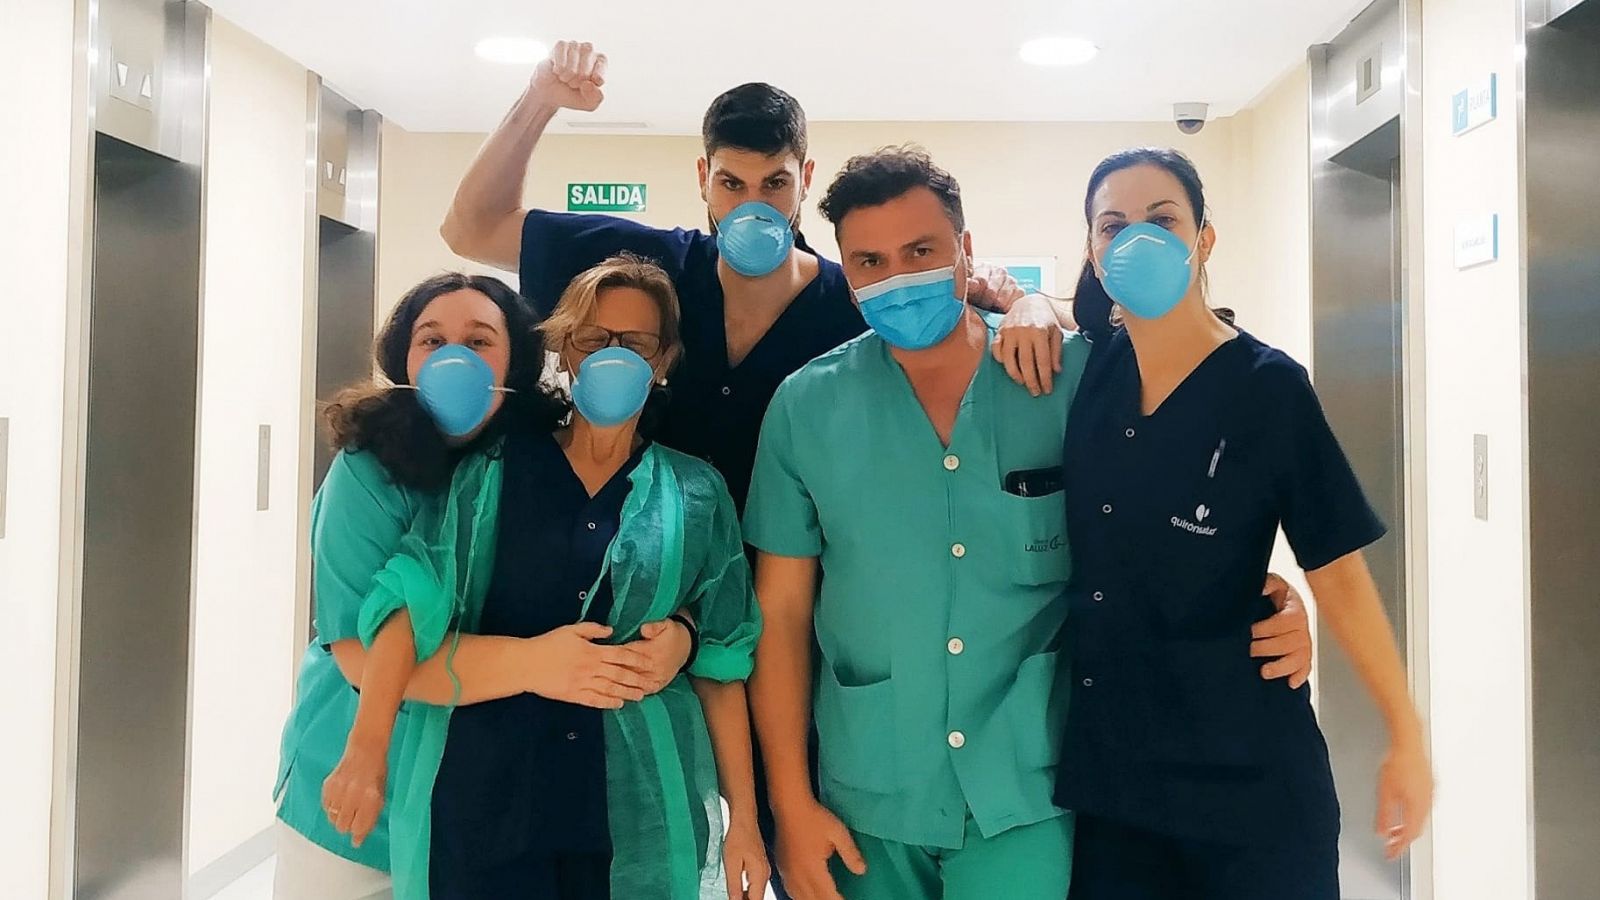 Vídeo: Un grupo de sanitarios de Madrid atiende de forma voluntaria las residencias de su área - RTVE.es